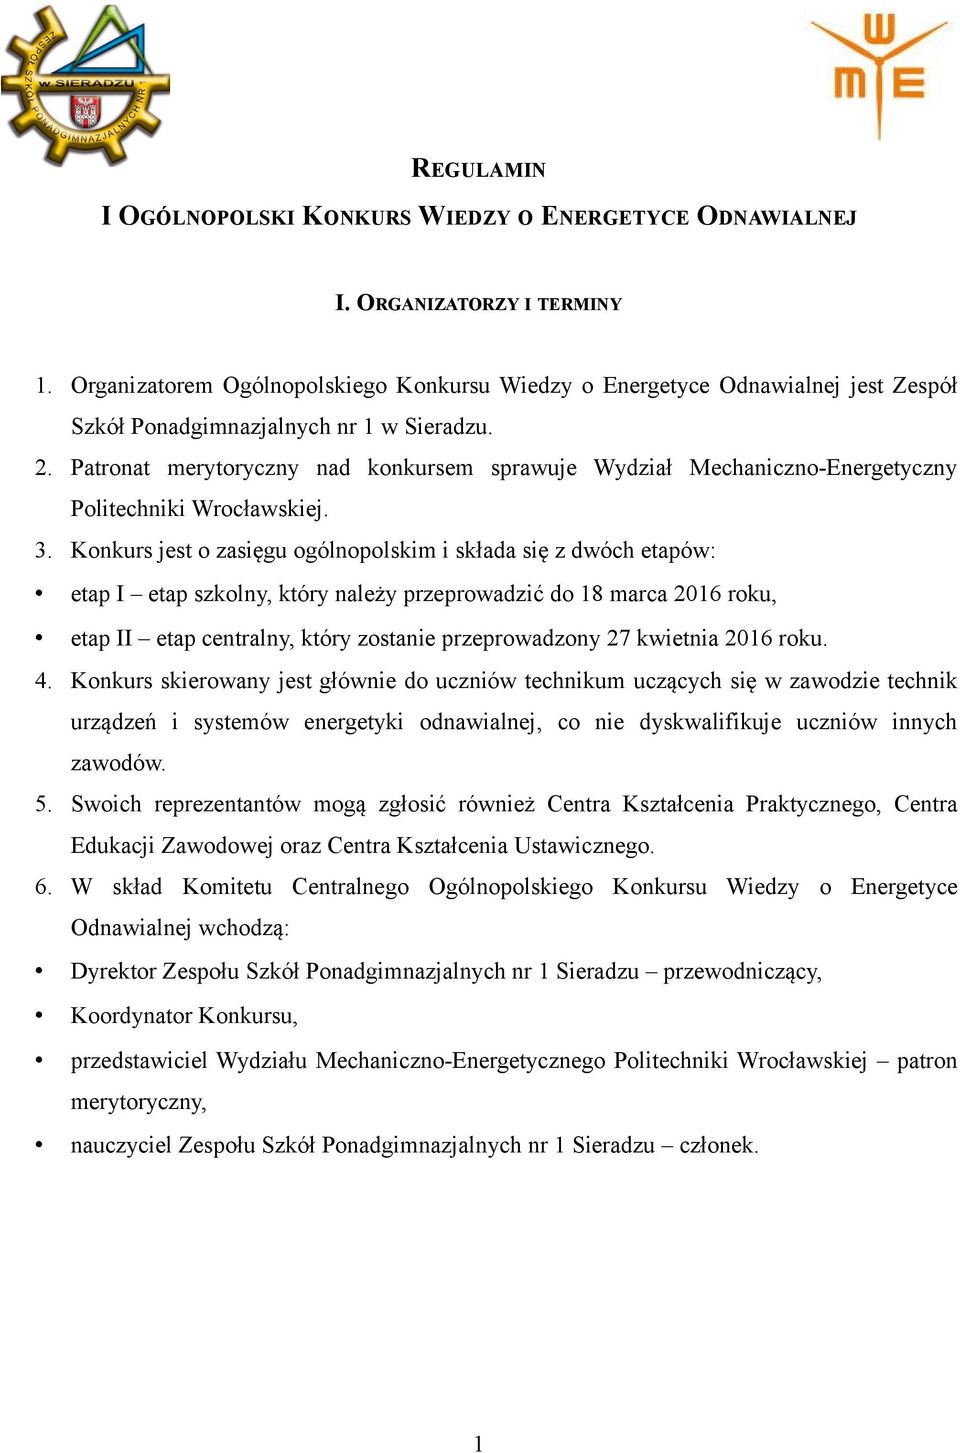 Patronat merytoryczny nad konkursem sprawuje Wydział Mechaniczno-Energetyczny Politechniki Wrocławskiej. 3.